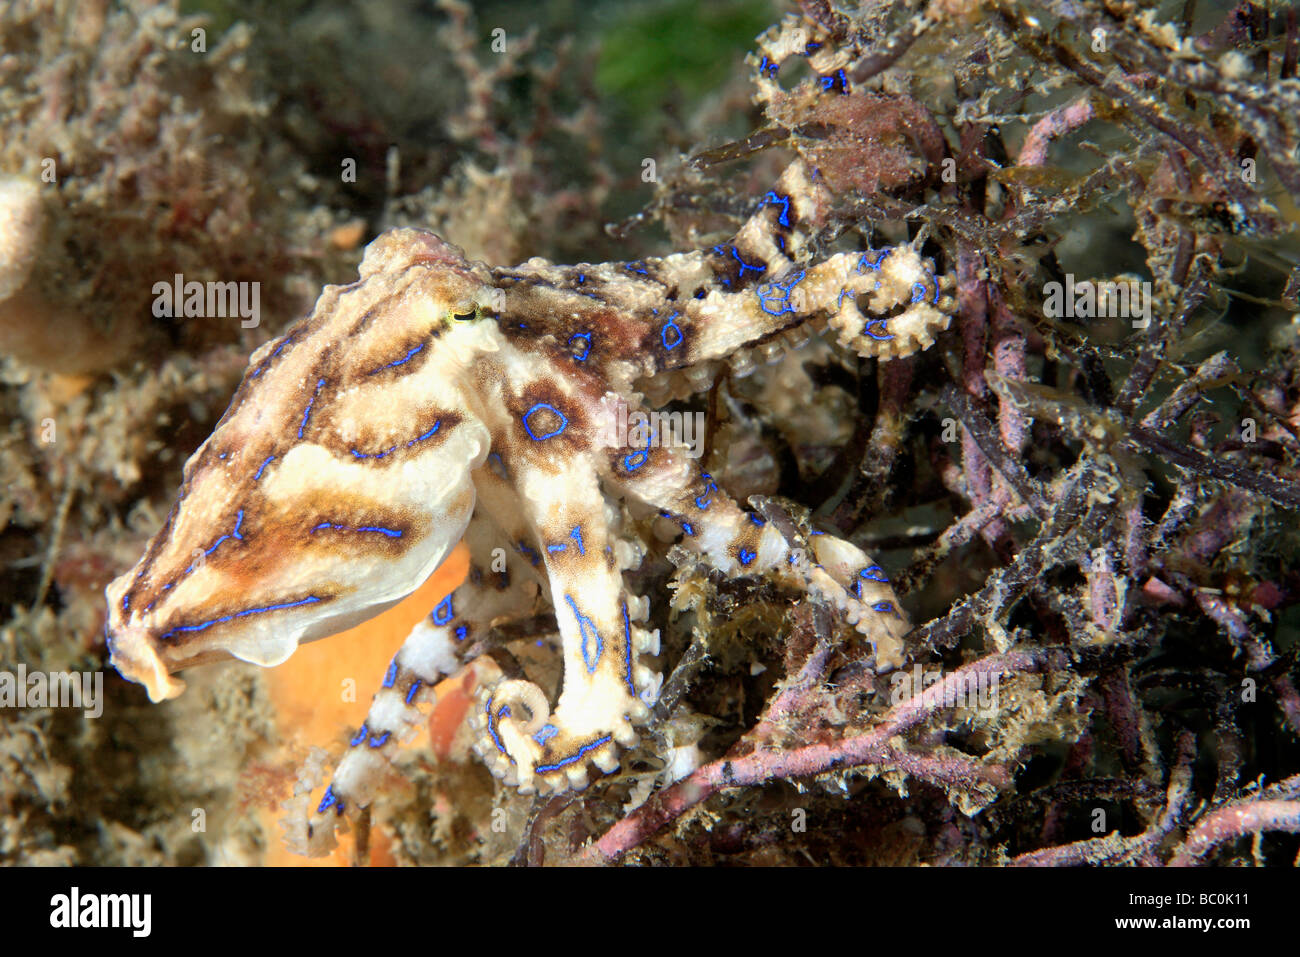 Velenosi blu meridionale-inanellati Octopus, Hapalochlaena fasciata. Questo polpo è in grado di iniettare un potente neurotossina che può uccidere. Foto Stock